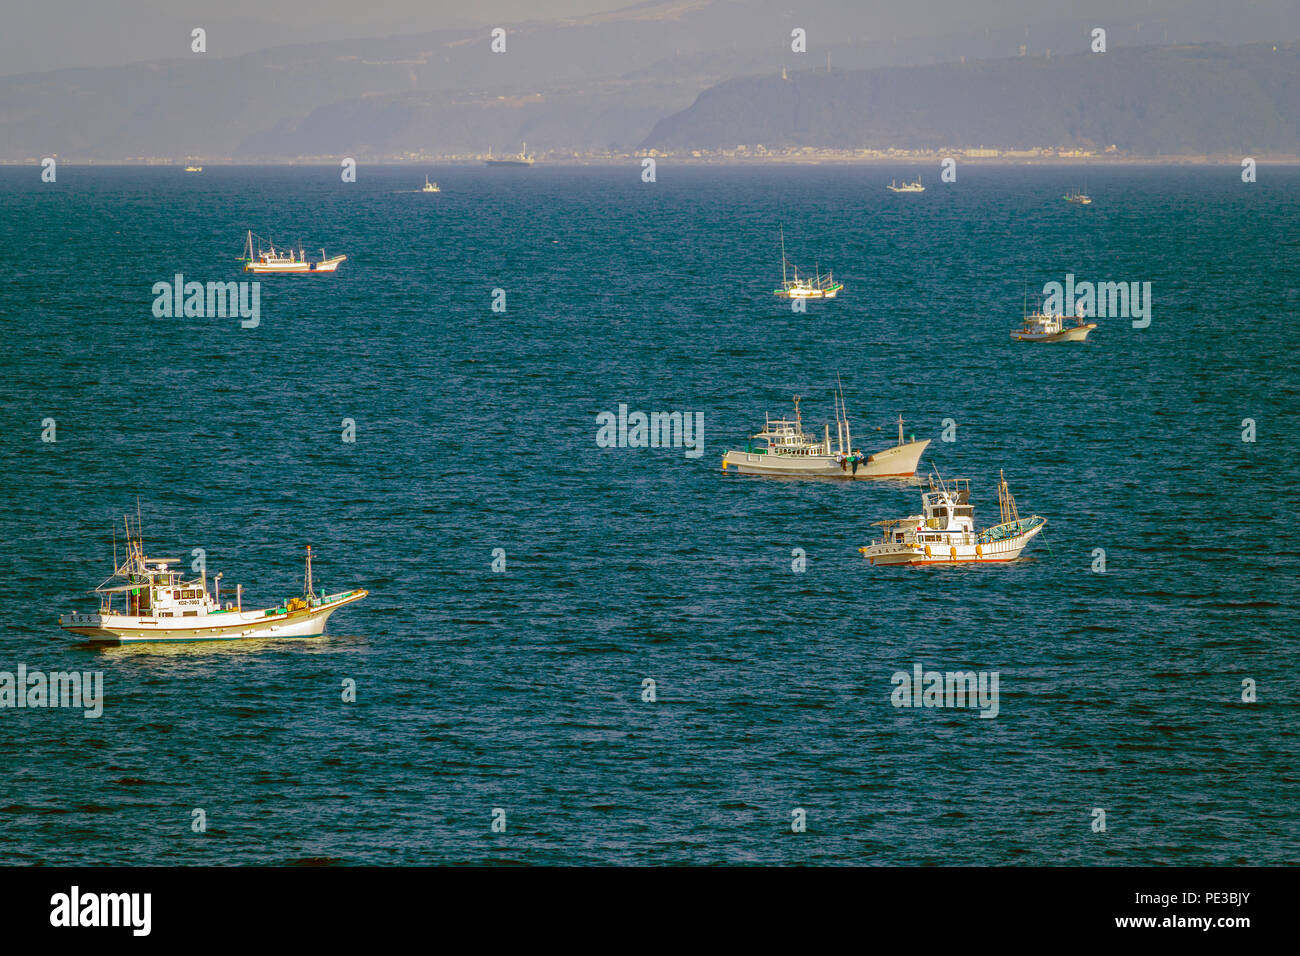 Bateaux de pêche dans le port d'Hiroshima Mer Intérieure de Seto Japon Asie Banque D'Images